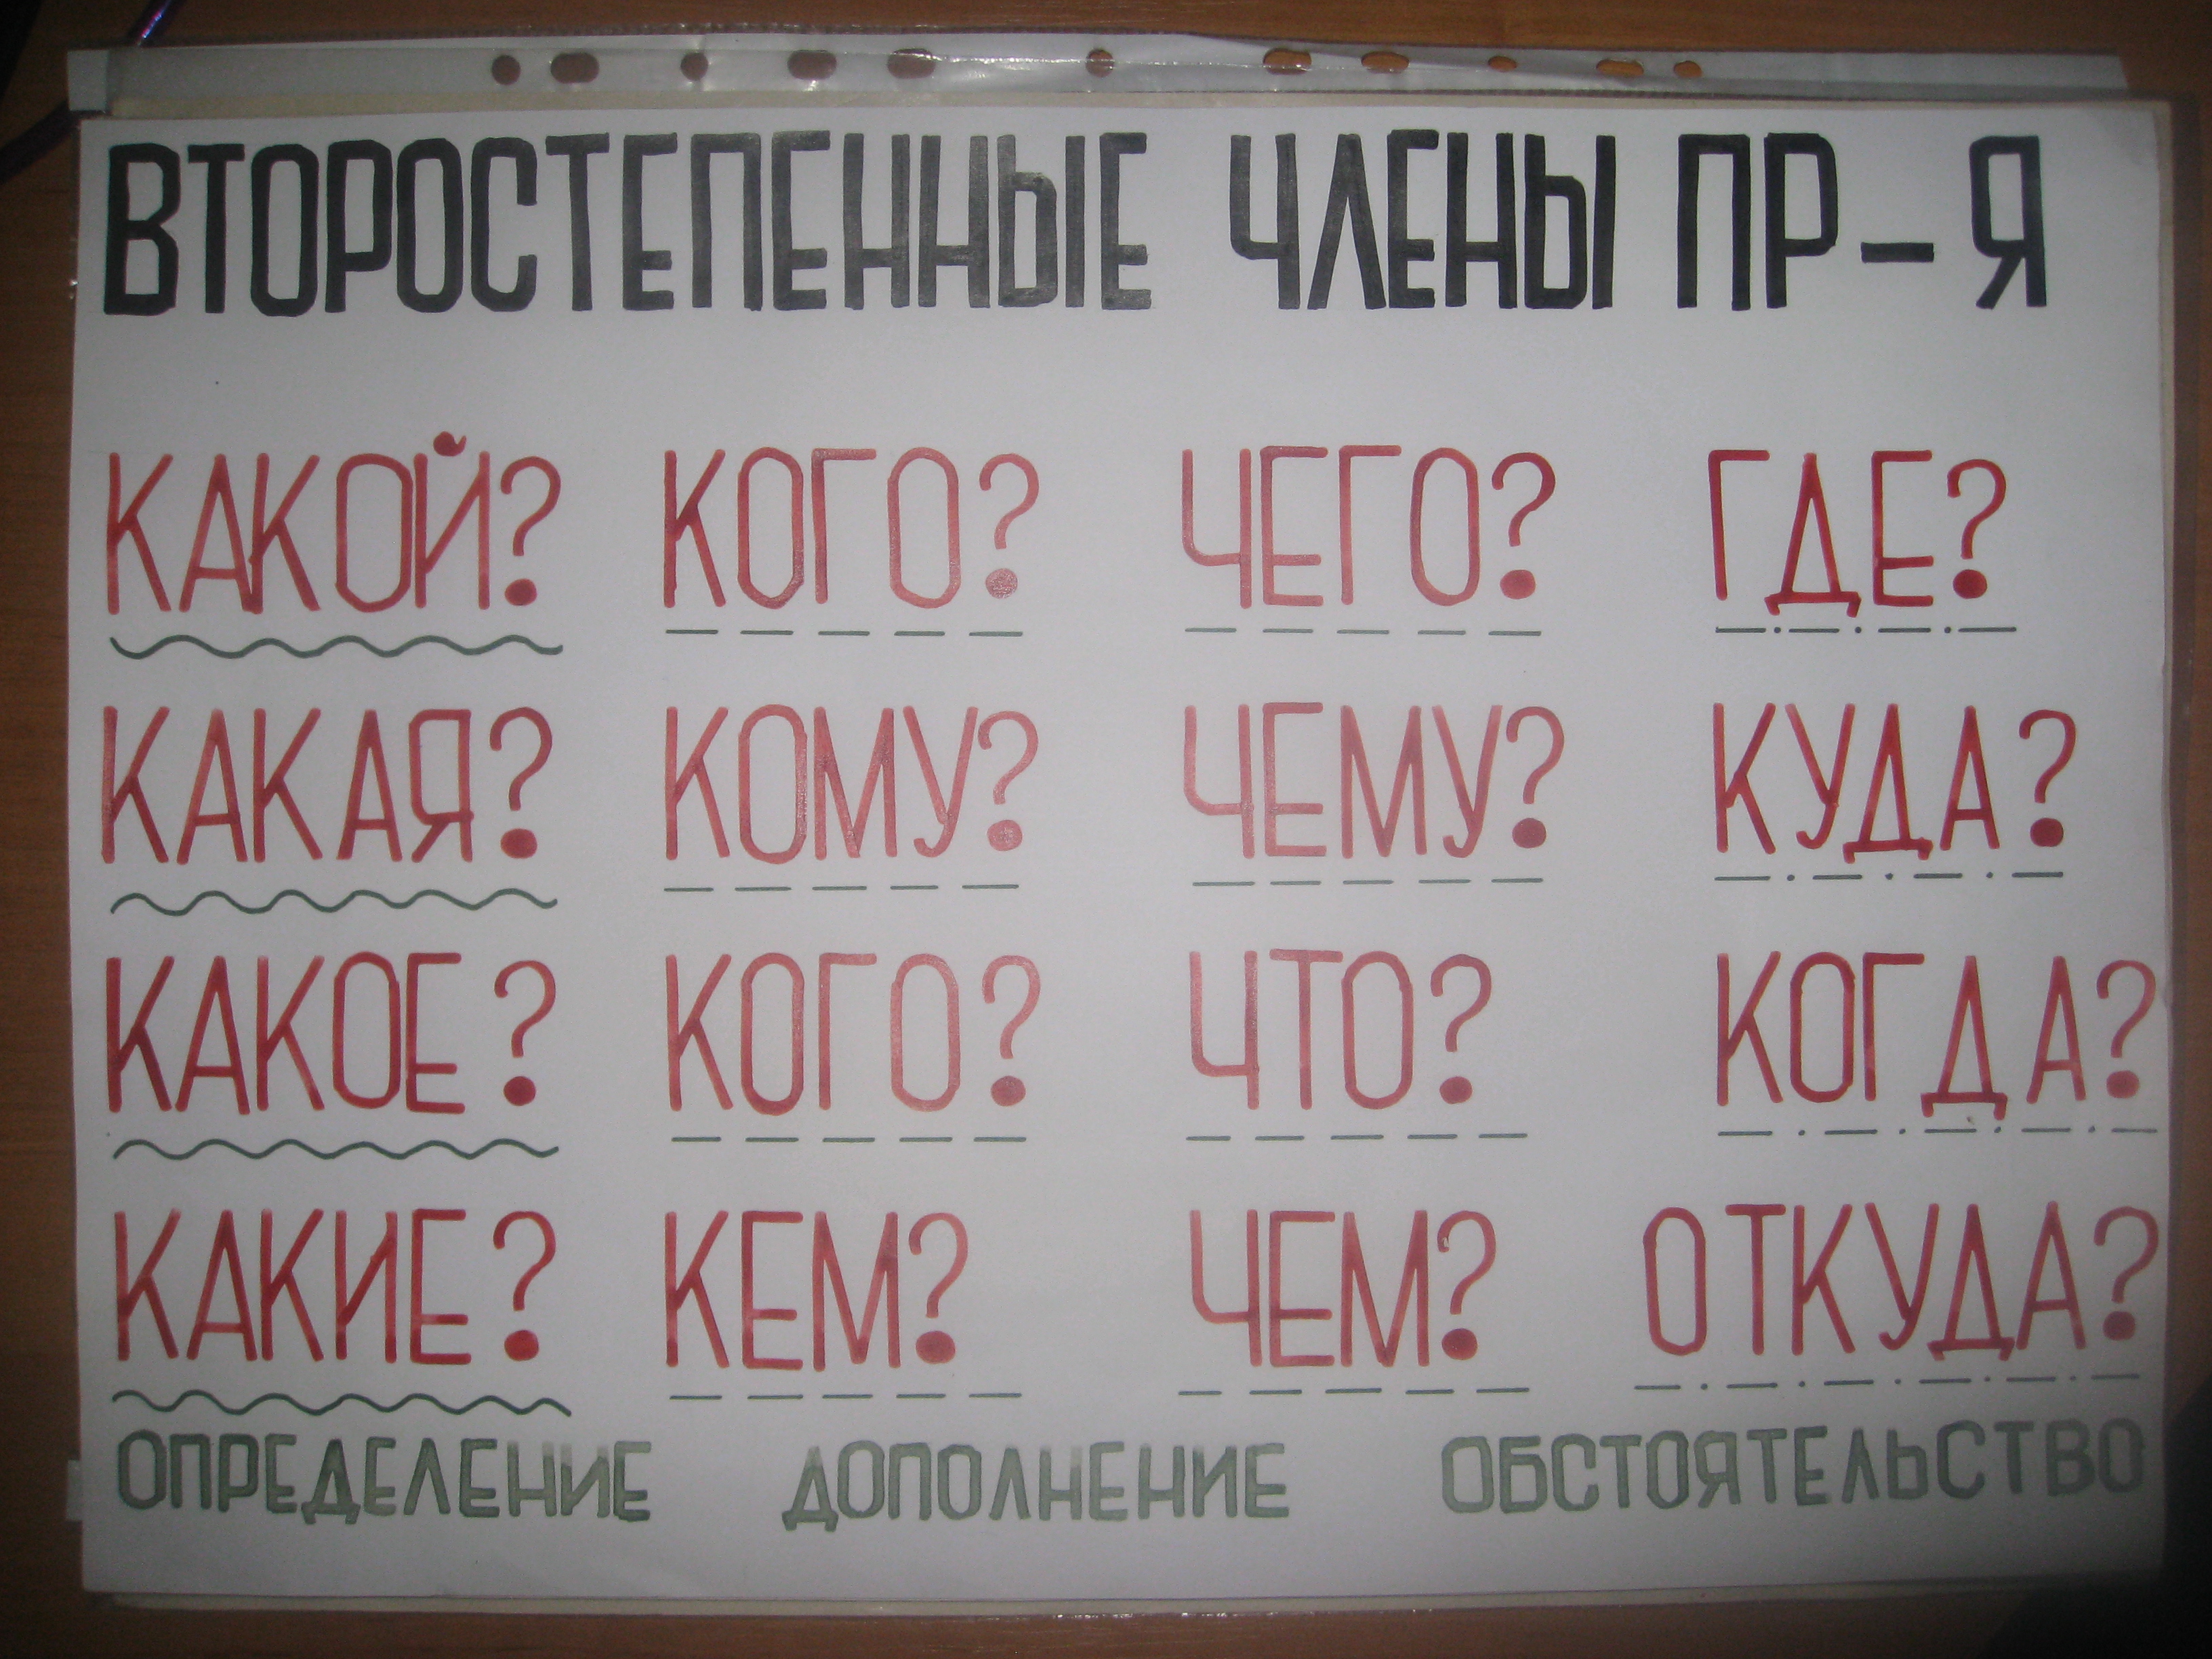 Урок русского языка 3 класс